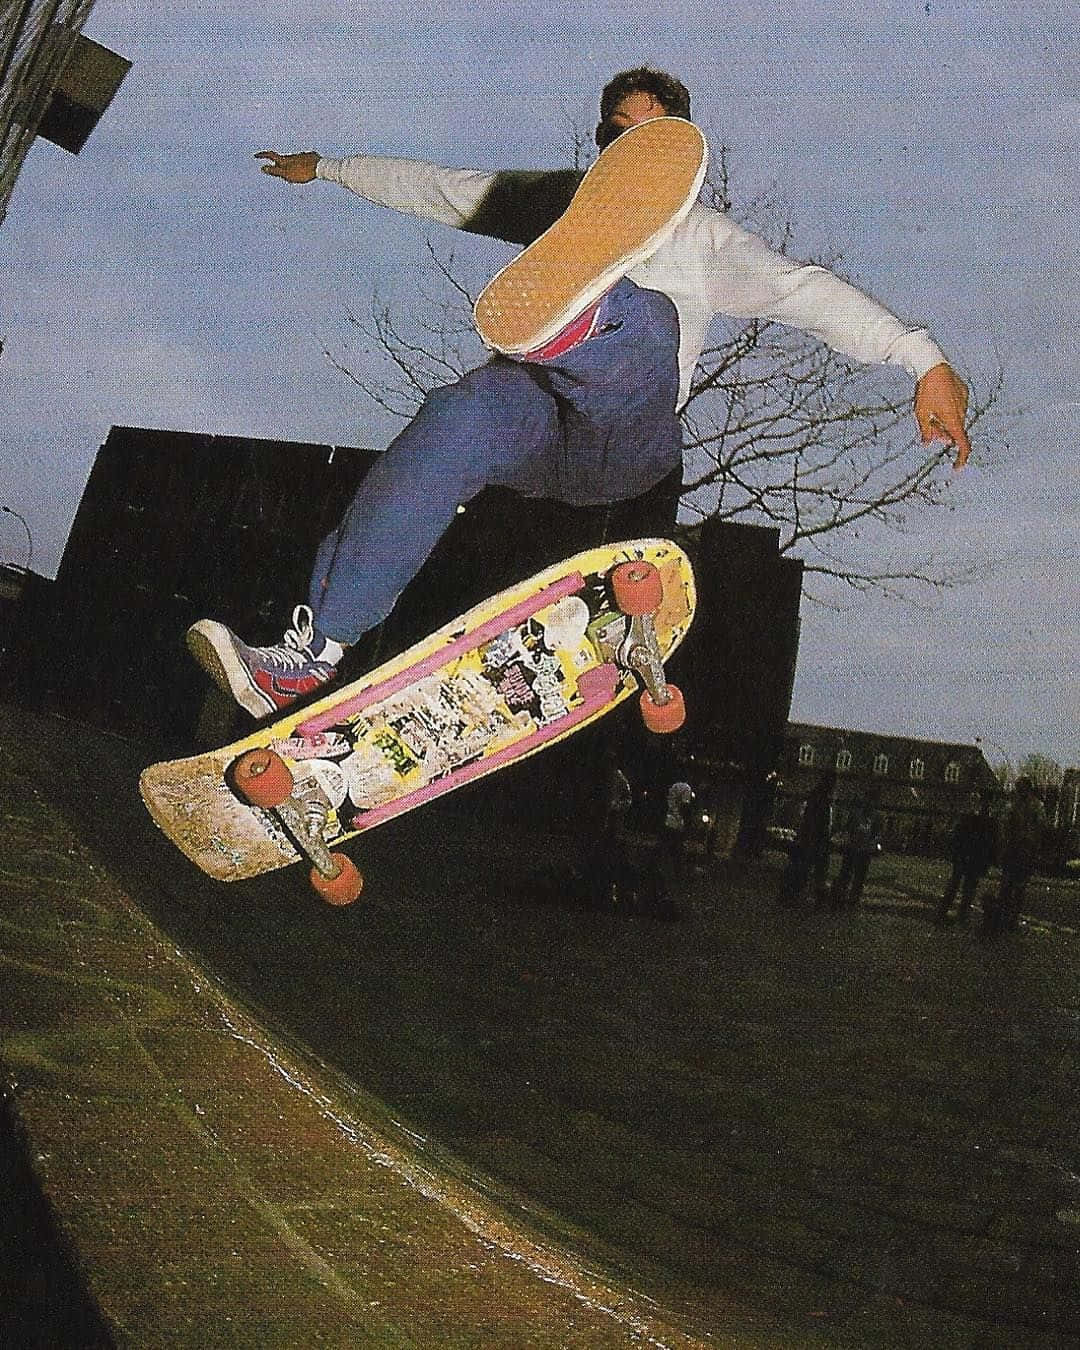 En skateboarder, der udfører et trick fra en halvpipe. Wallpaper